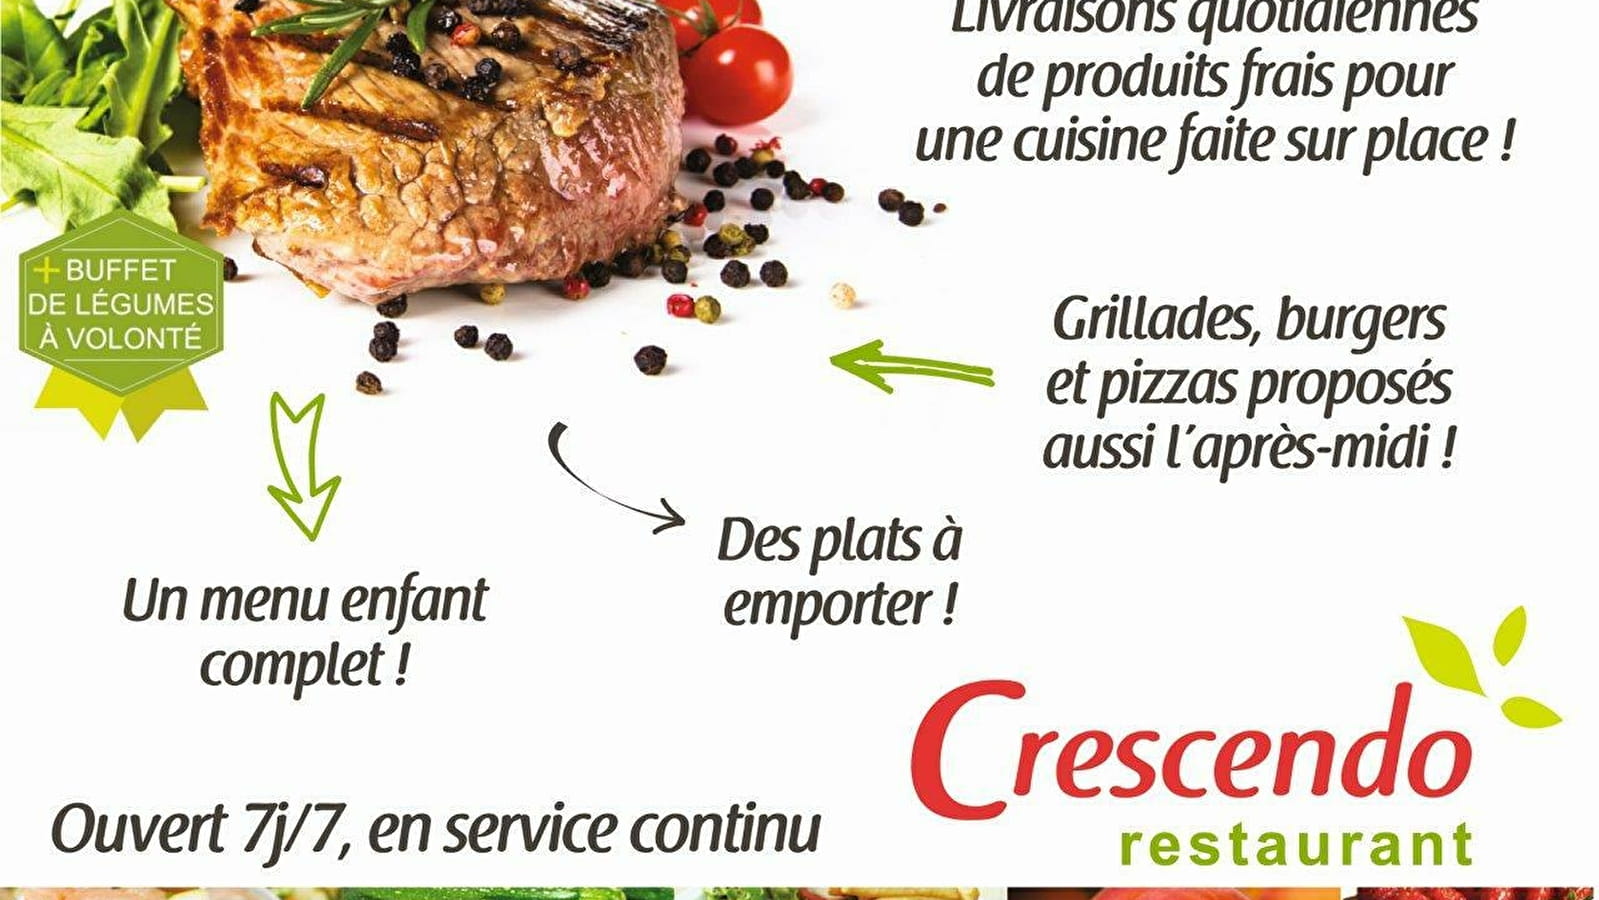 Restaurant Crescendo